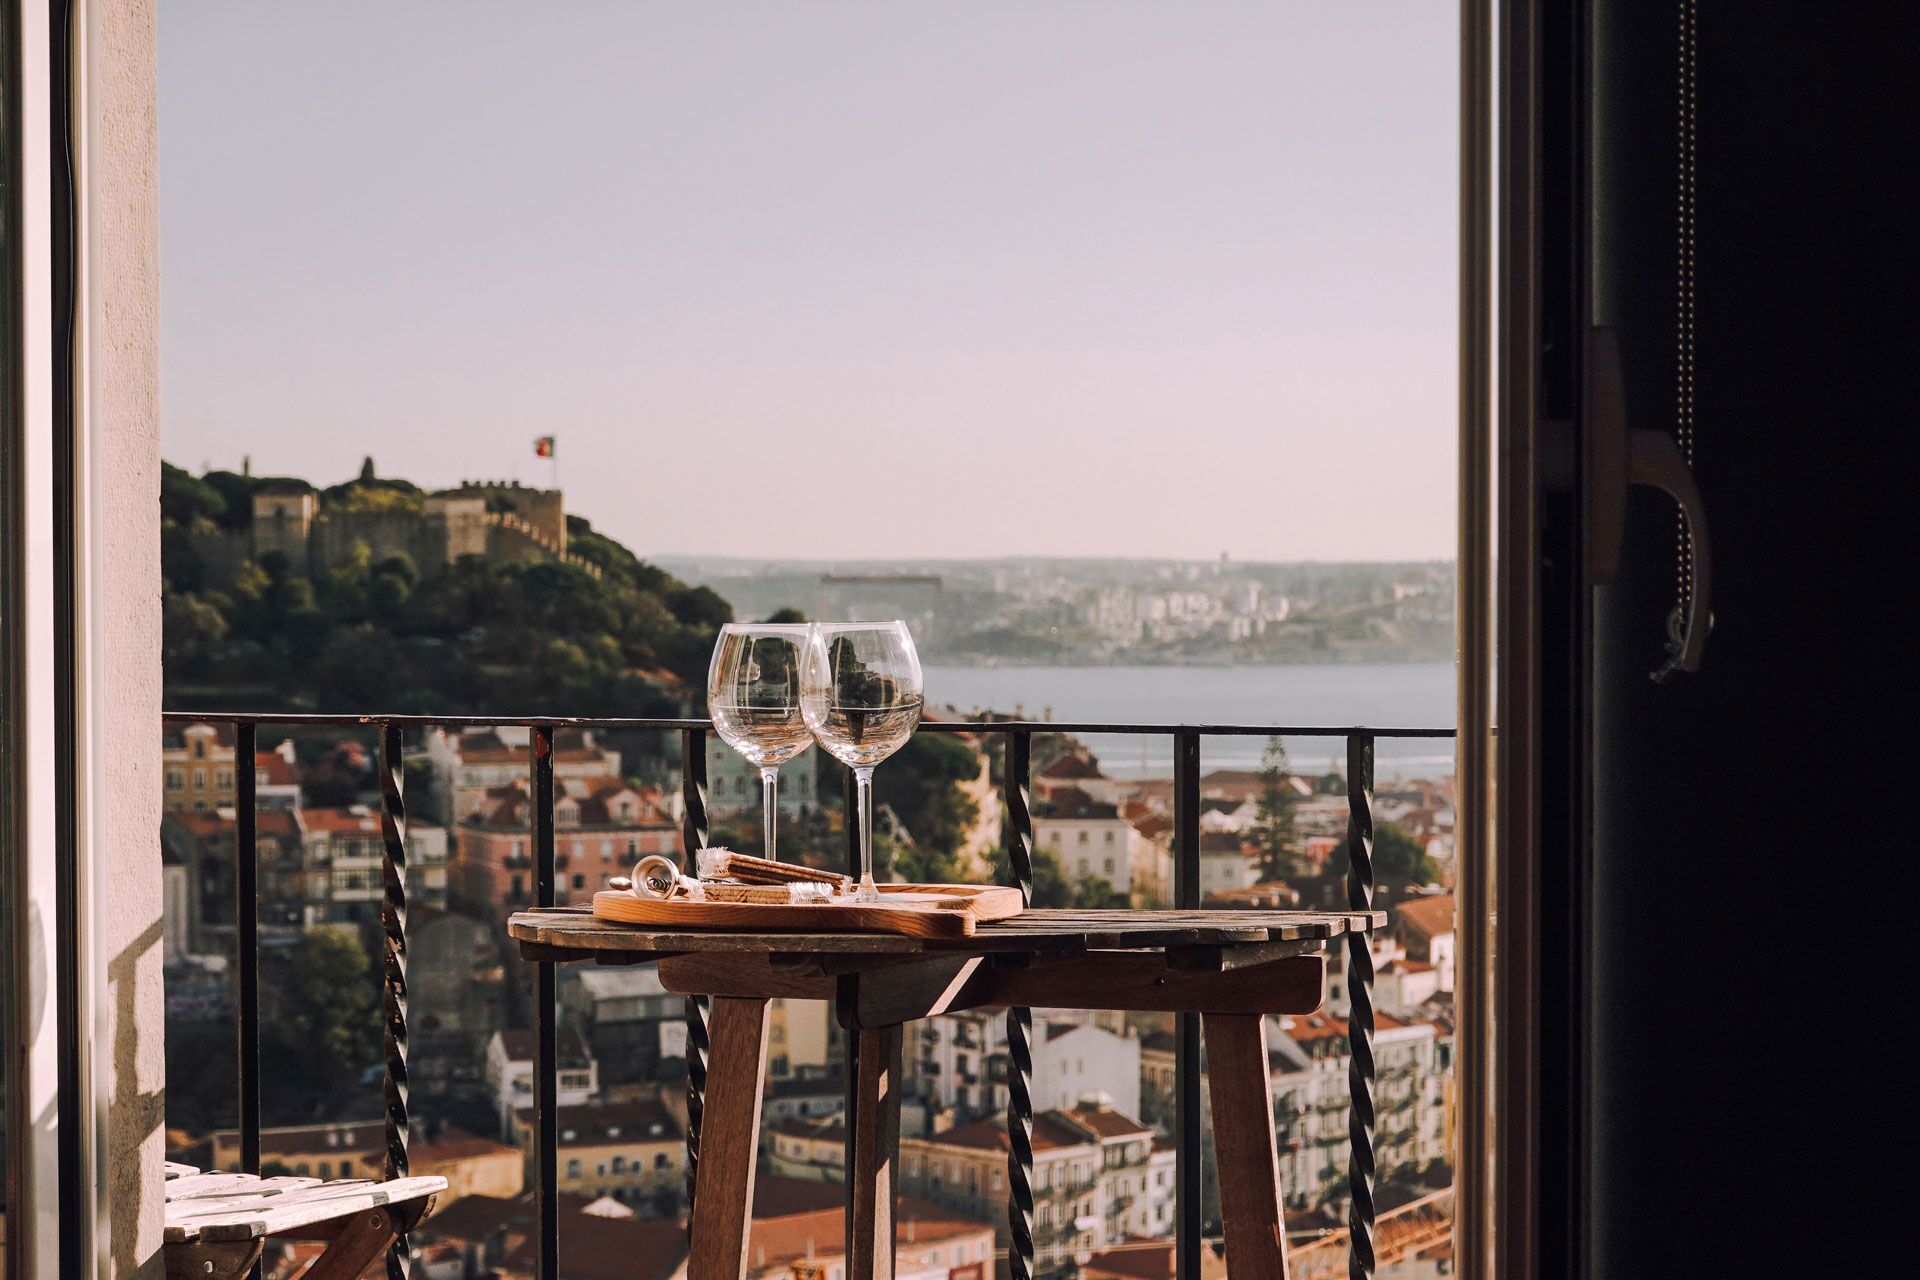 Meilleurs hôtels à Lisbonne (17 suggestions)